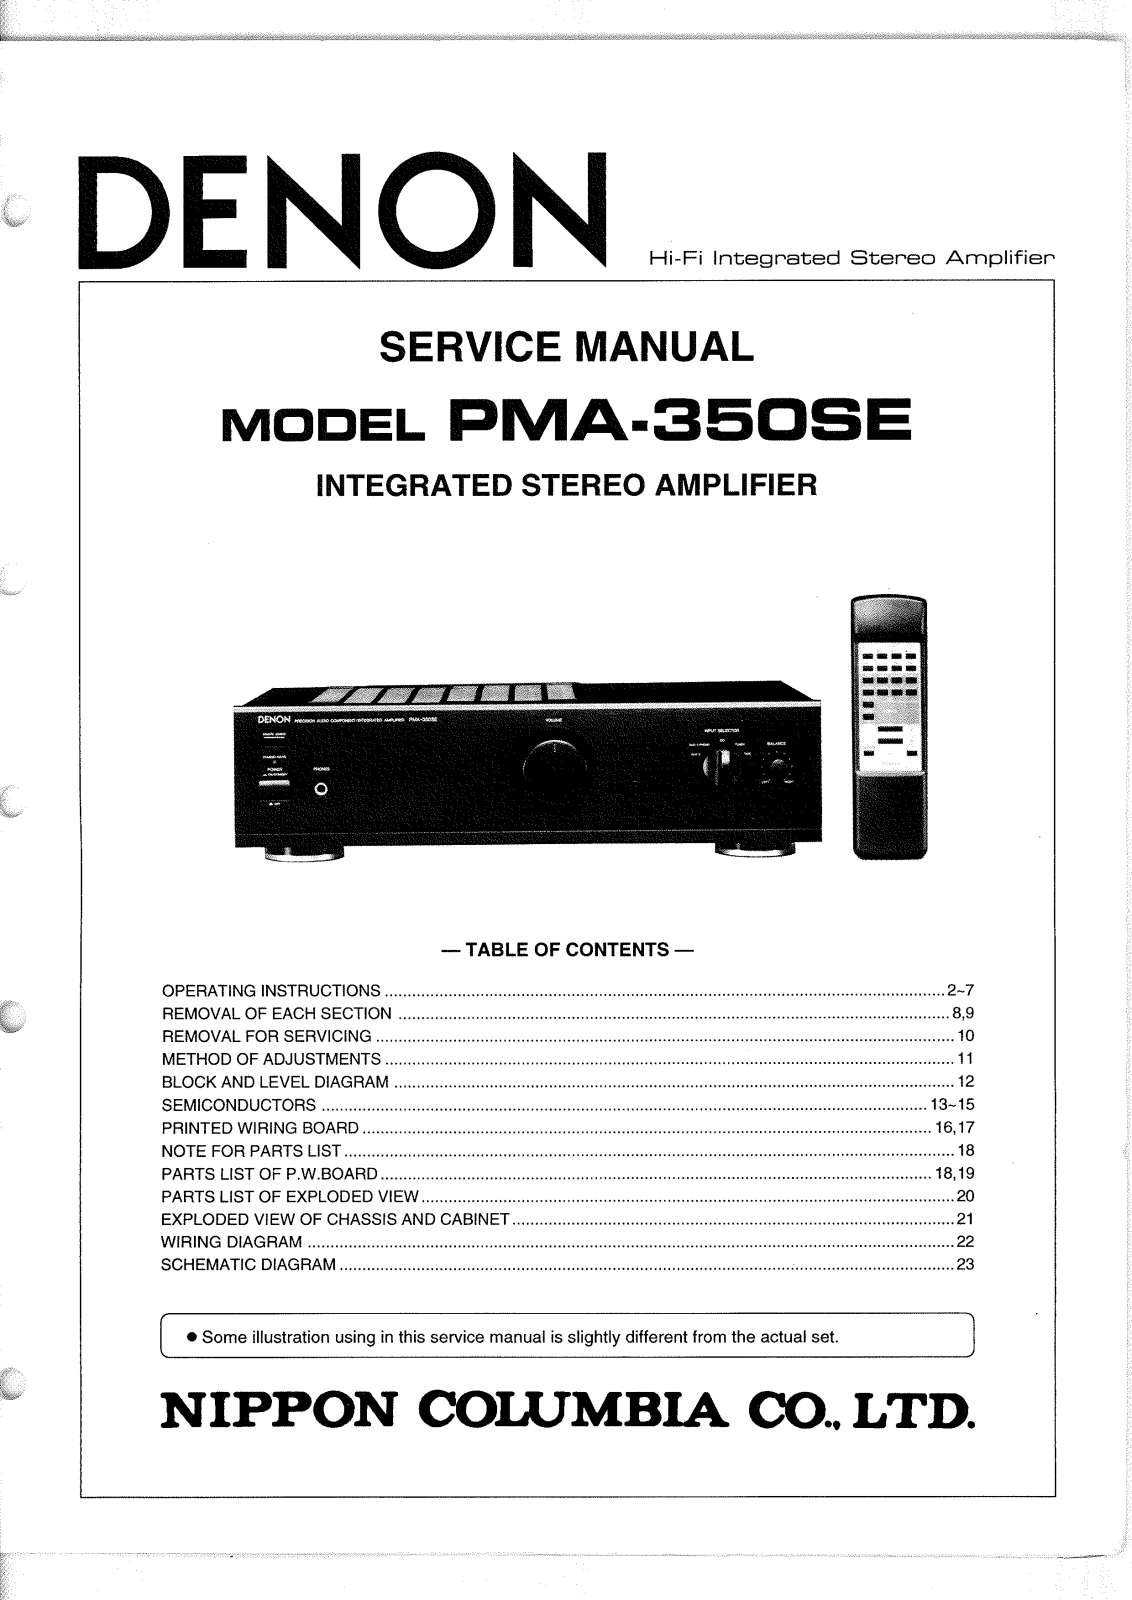 Denon PMA-350SE Service Manual